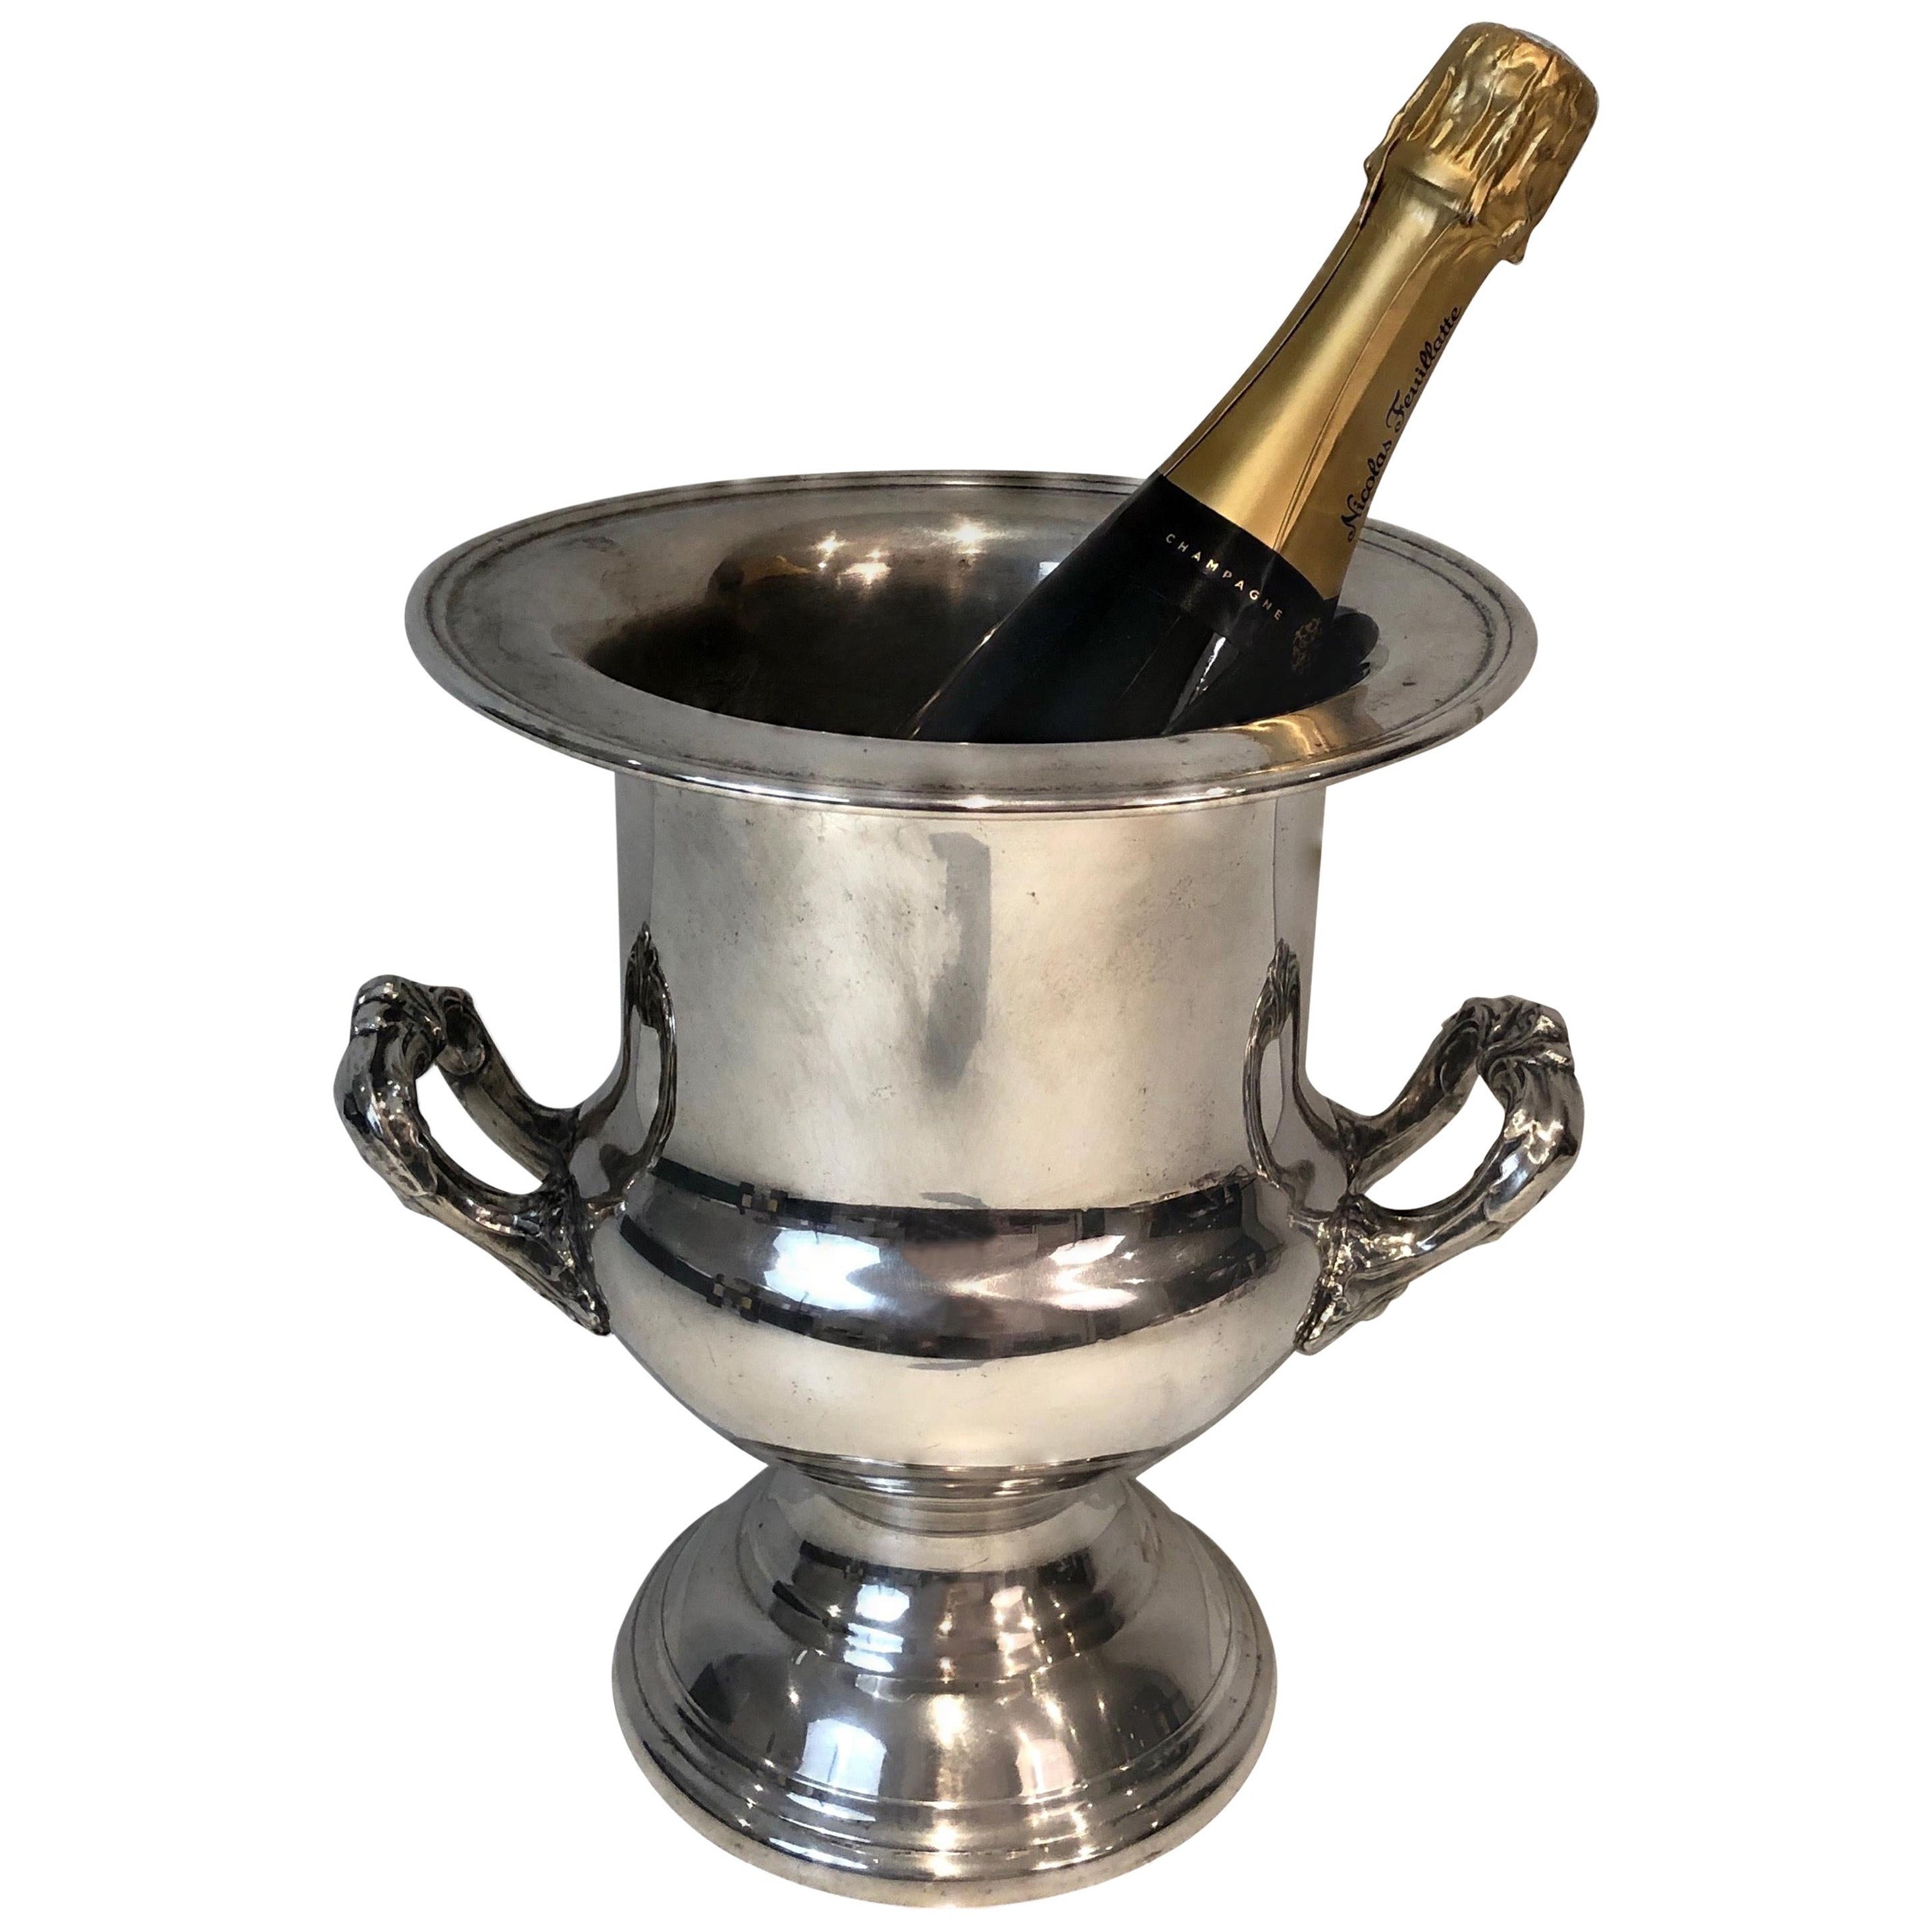 Seau à champagne en métal argenté, français, vers 1900